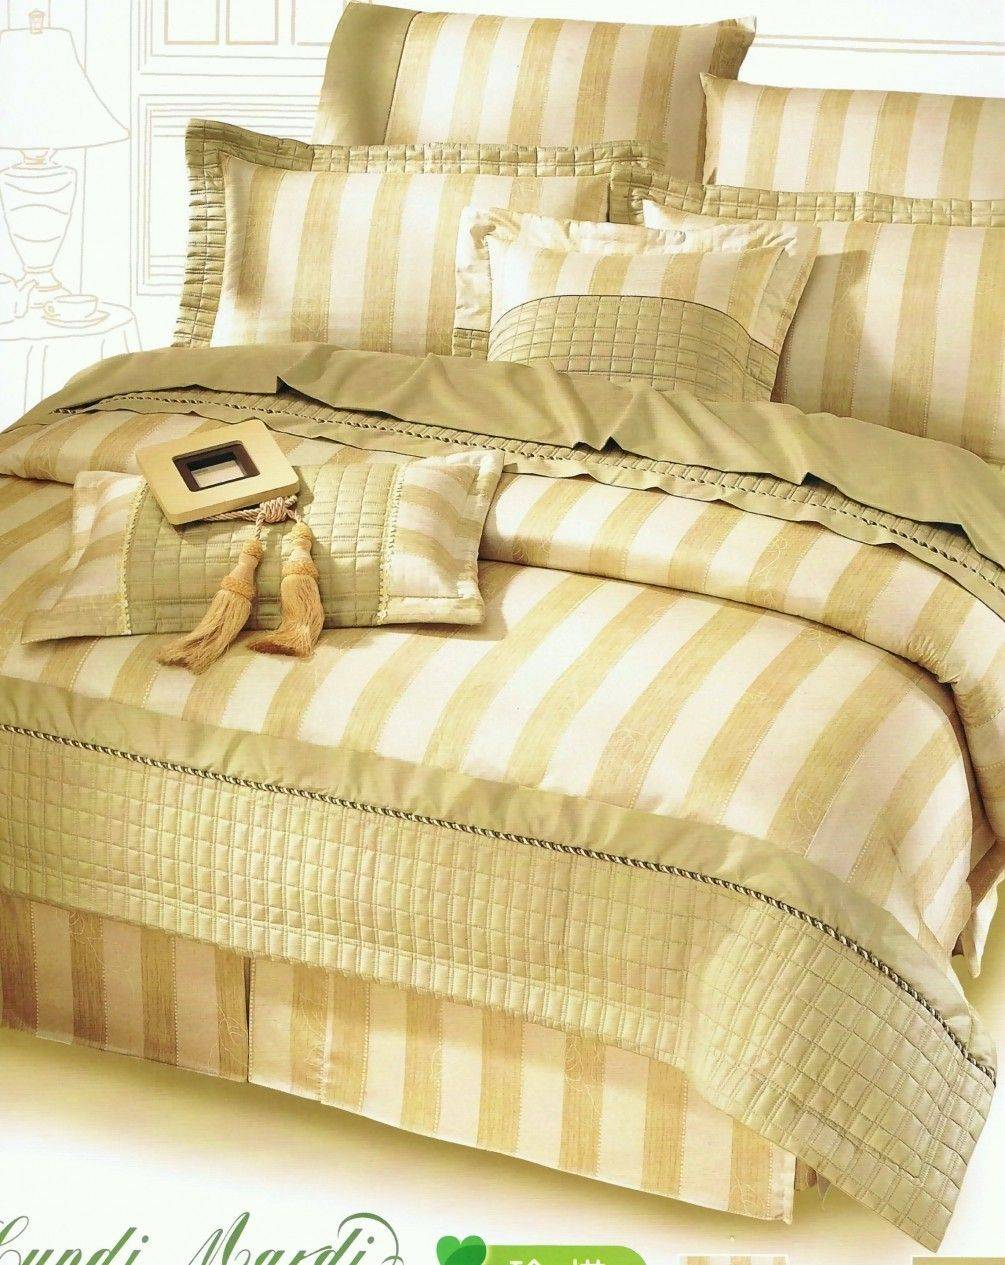 基本款純棉(五件式)床罩組